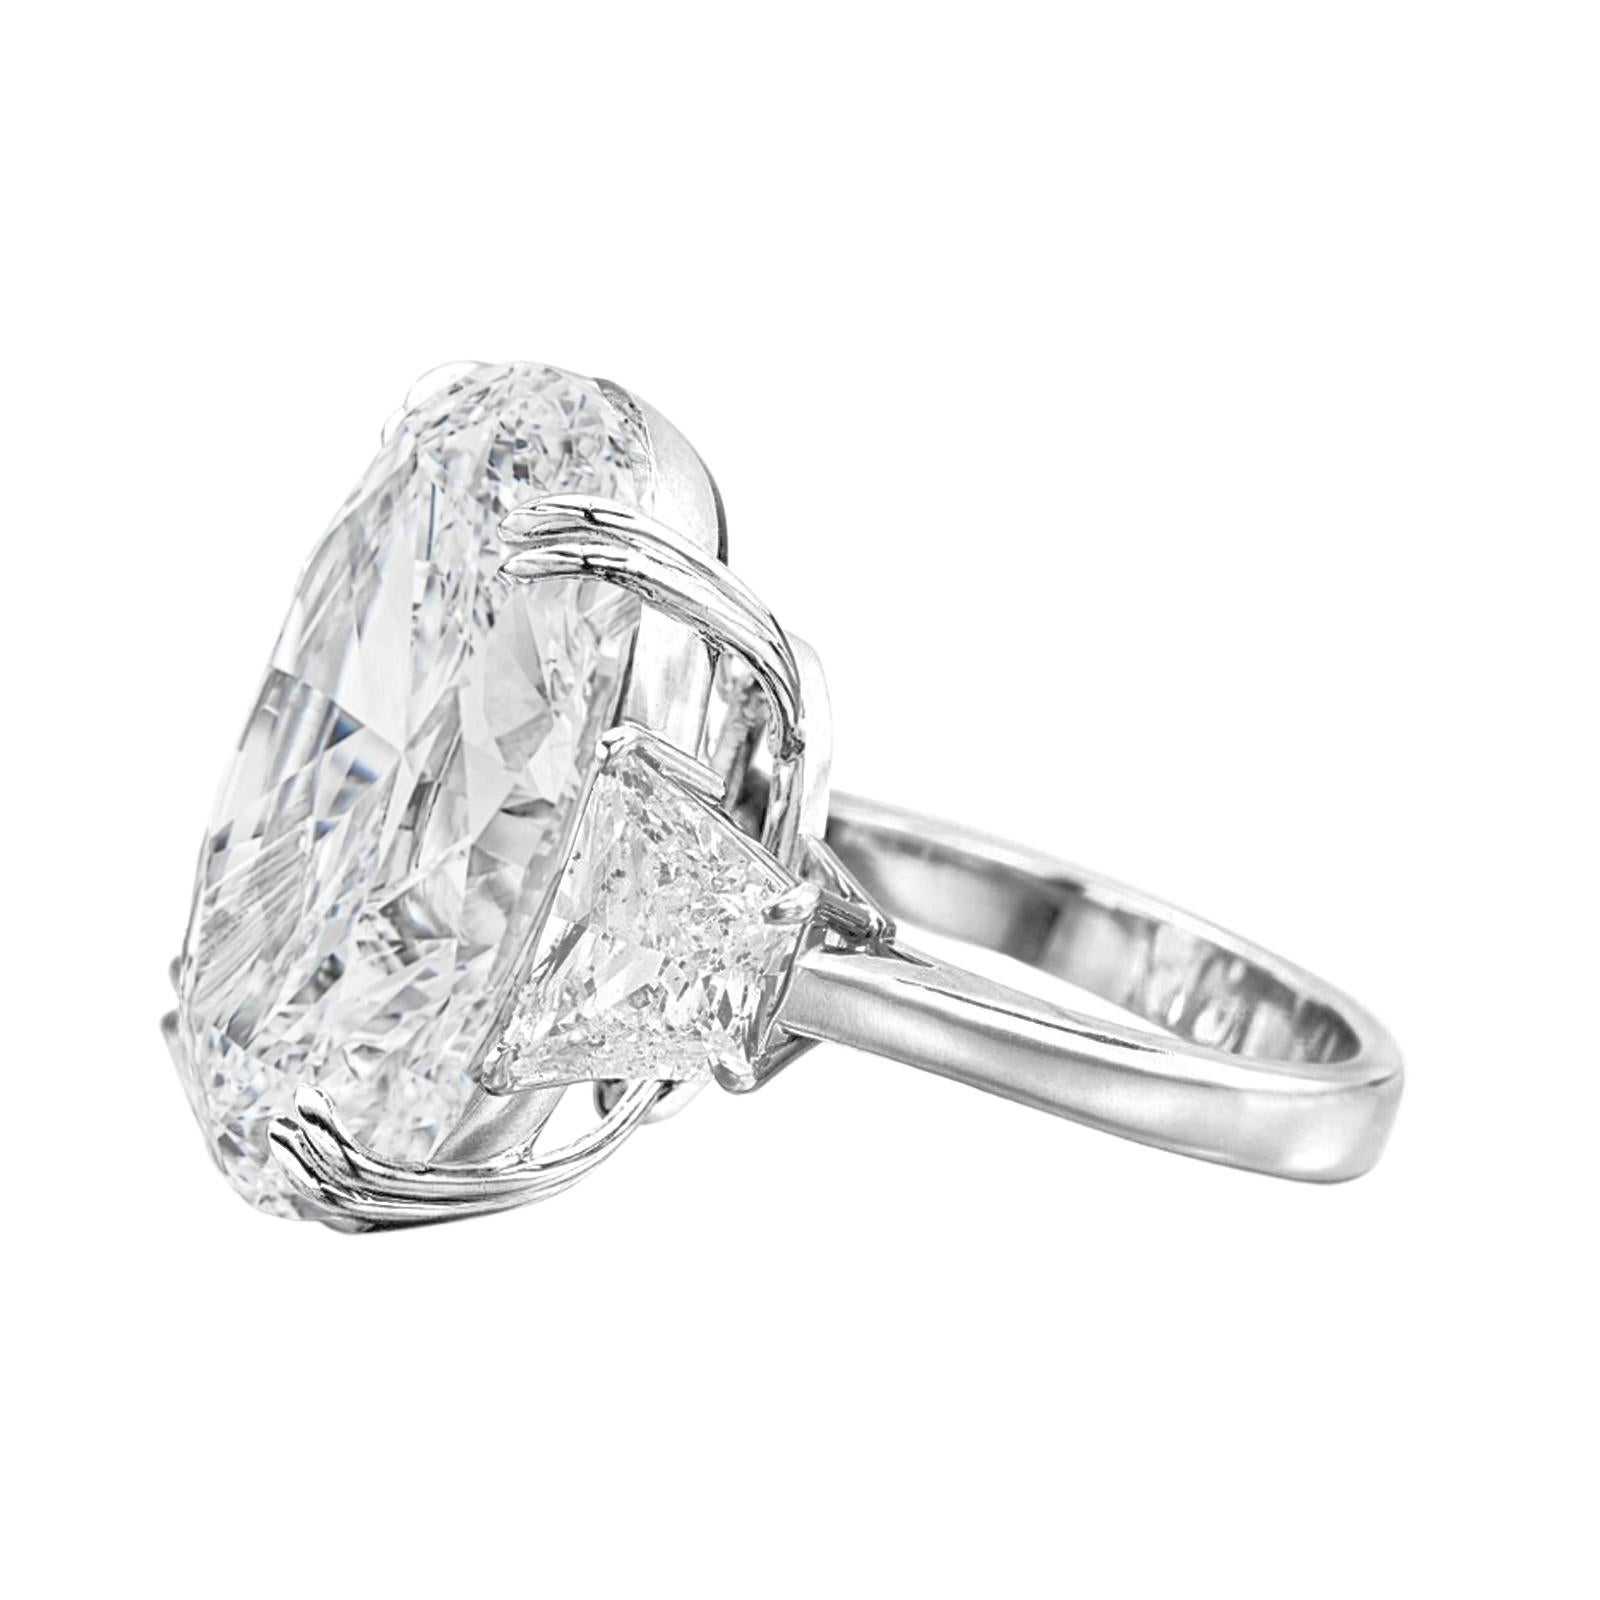 Der Inbegriff von Luxus und Raffinesse: unser außergewöhnlicher GIA-zertifizierter ovaler 8-Karat-Diamantring vom Typ IIA Golconda.

Dieser bemerkenswerte, von GIA zertifizierte Ring ist mit einem atemberaubenden ovalen 8-Karat-Diamanten des Typs